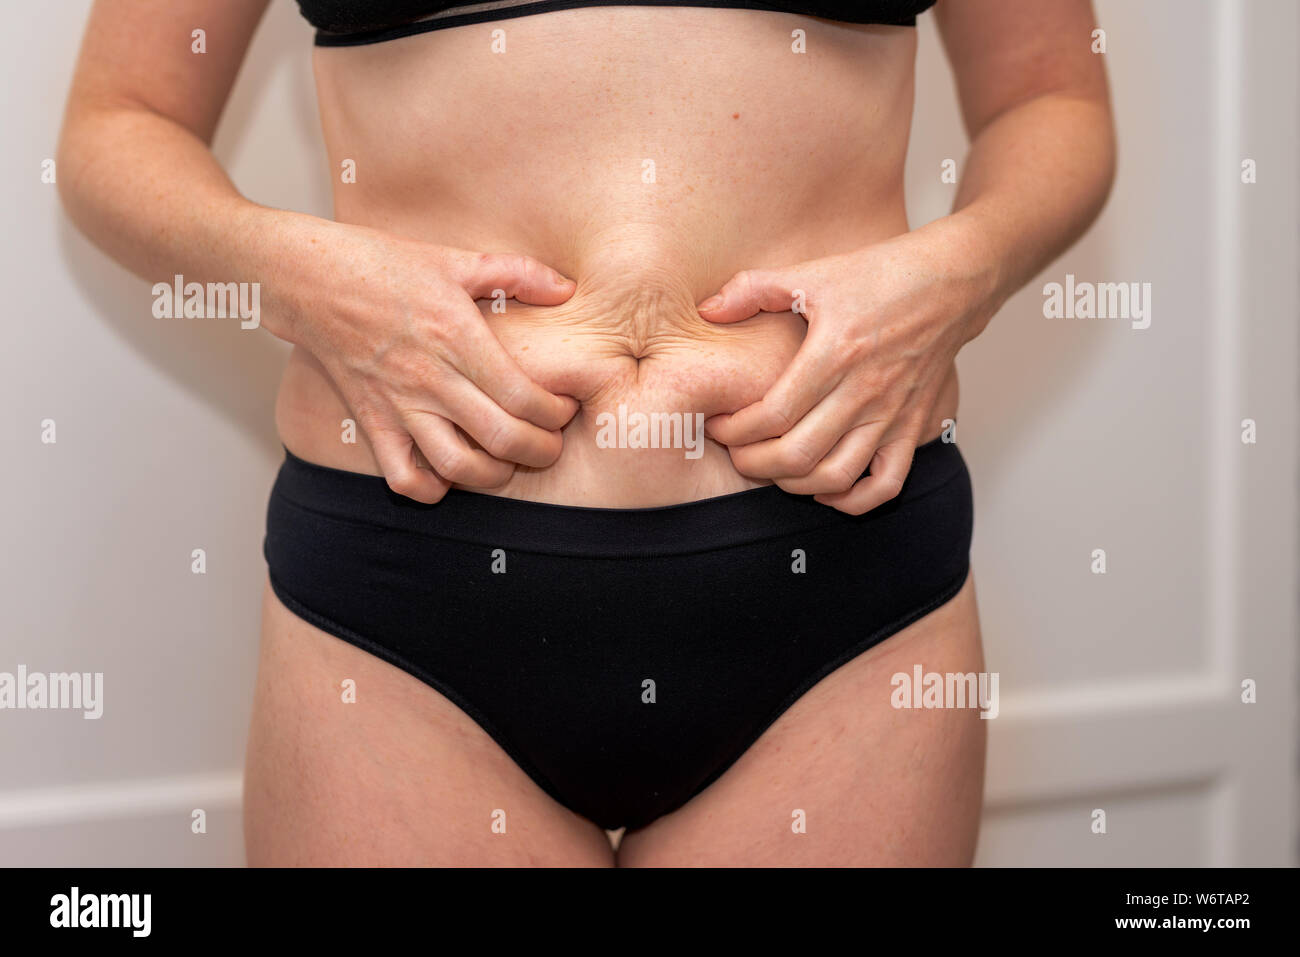 La grasa del vientre femenino, mujer sosteniendo su piel para controlar la celulitis. Deshacerse de la grasa abdominal y pérdida de peso. La mujer vista frontal del vientre de grasa corporal Foto de stock